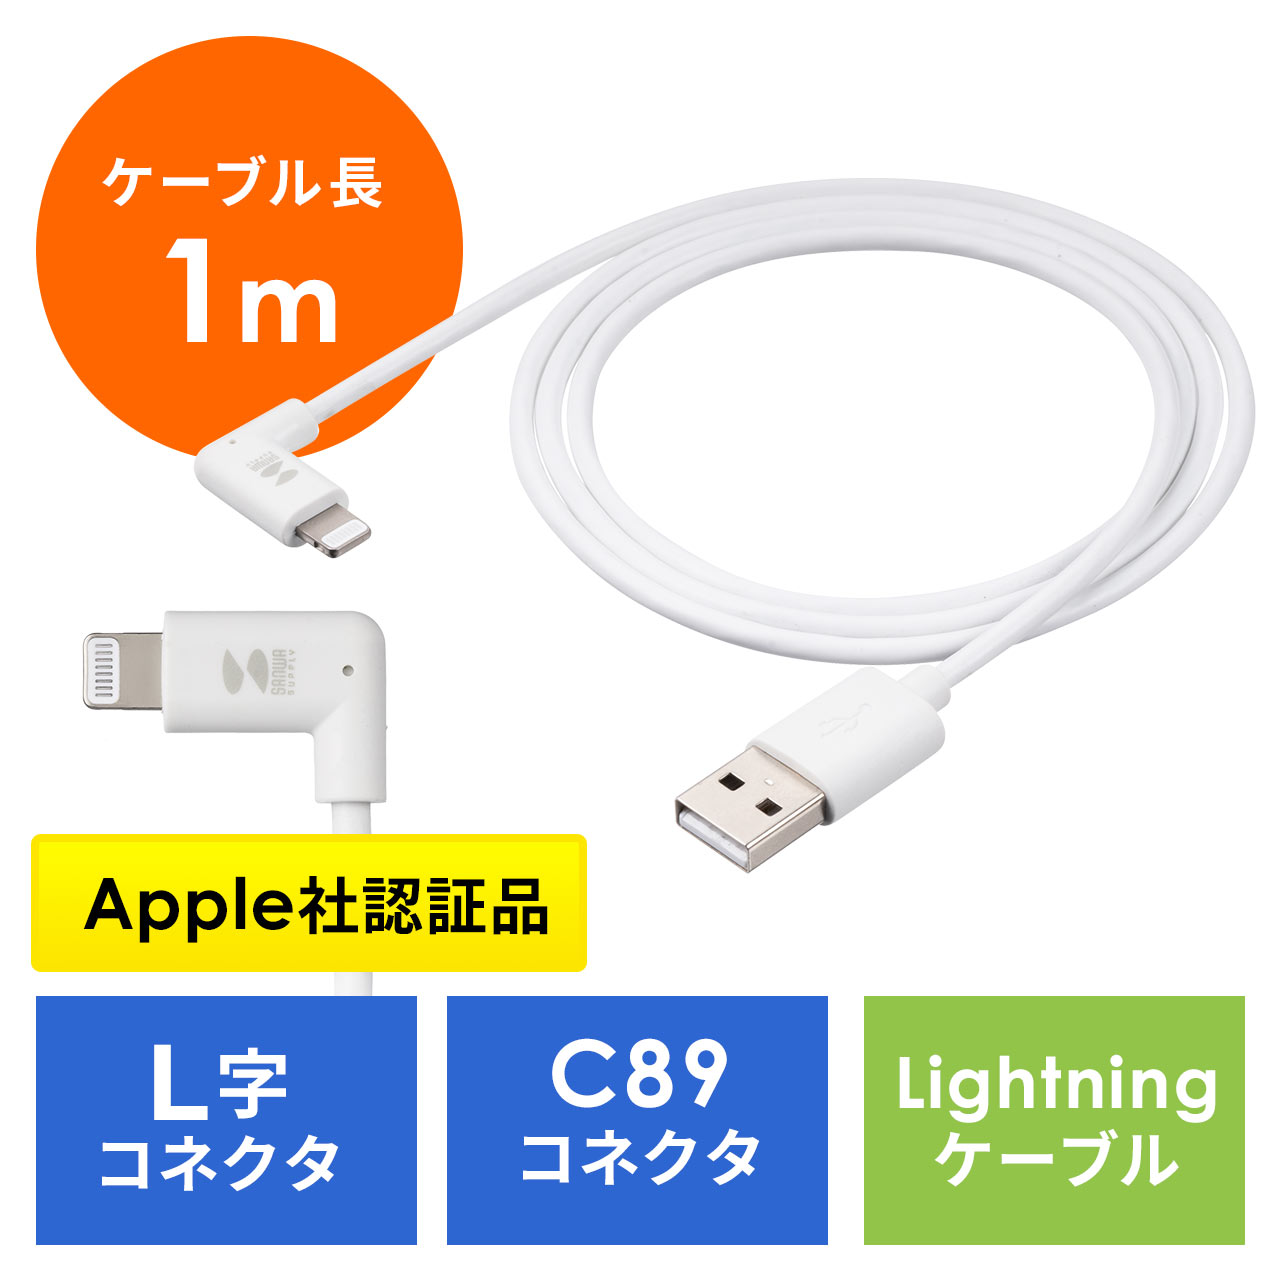 L字型 Lightningケーブル 長さ1m MFi認証品 充電 データ転送 iPhone iPad AirPods 充電ケーブル ホワイト  500-IPLM029Wの販売商品 通販ならサンワダイレクト